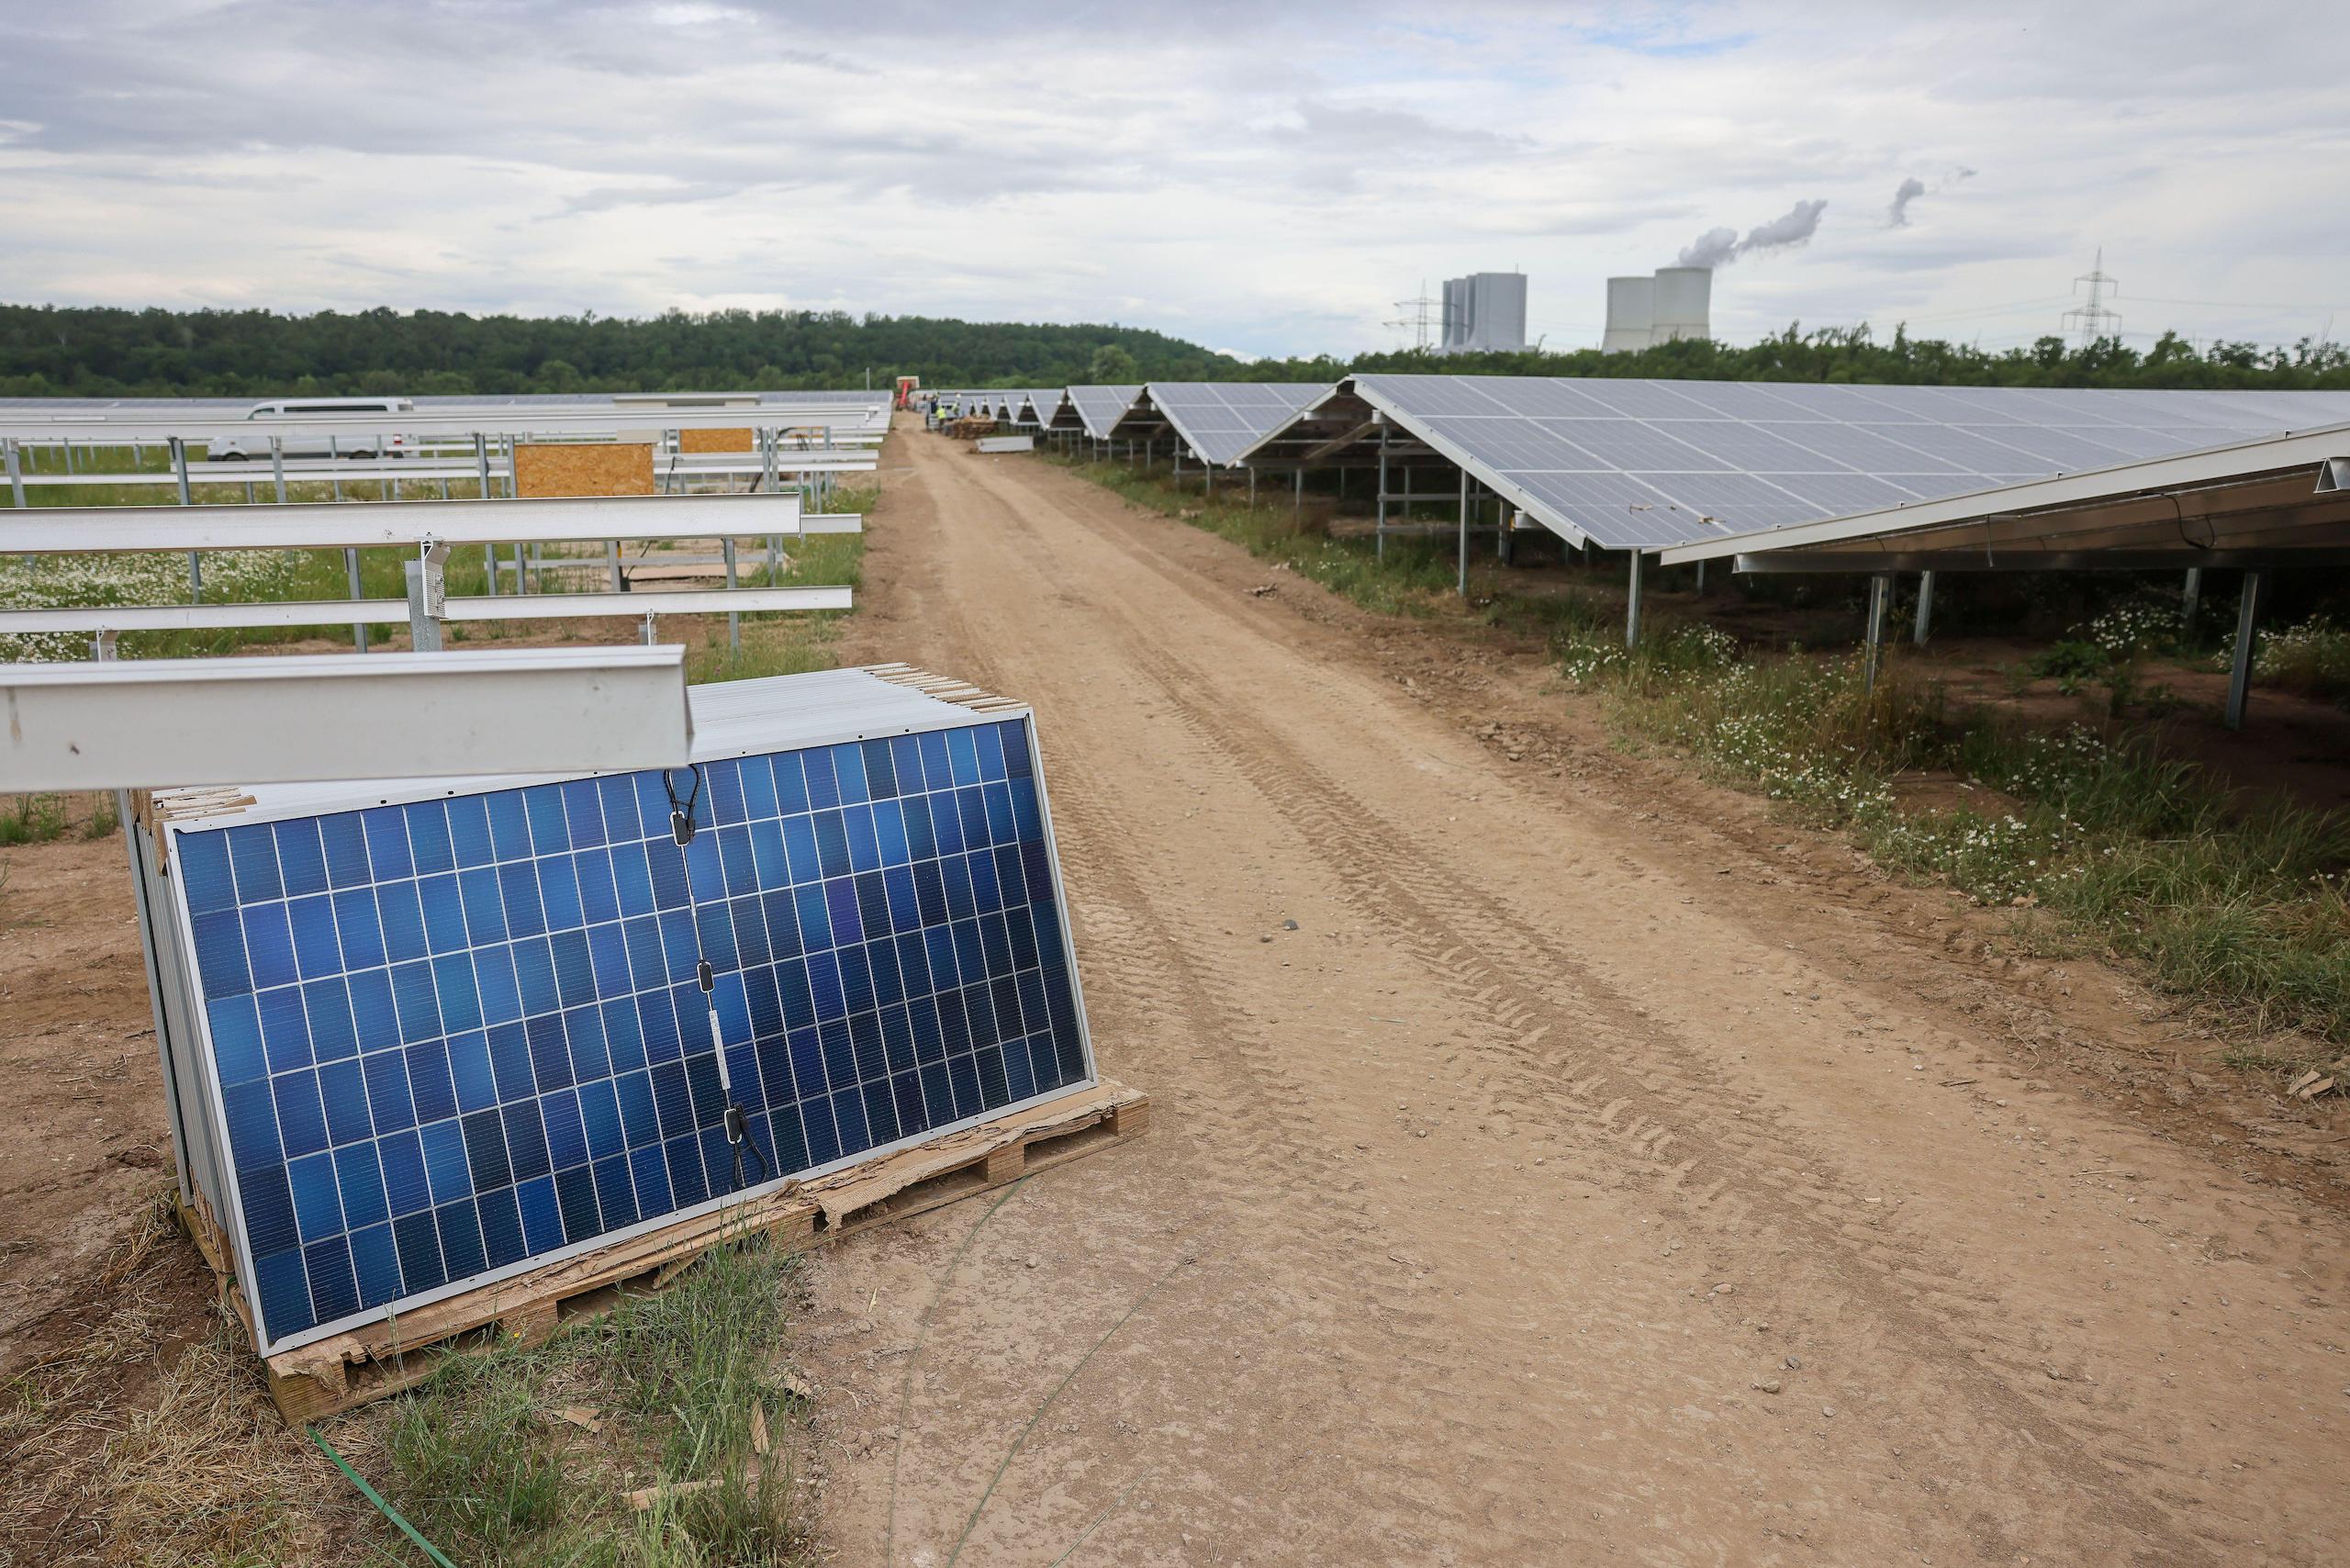 Farma fotowoltaiczna w Niemczech, pochylona pod panelem słonecznym